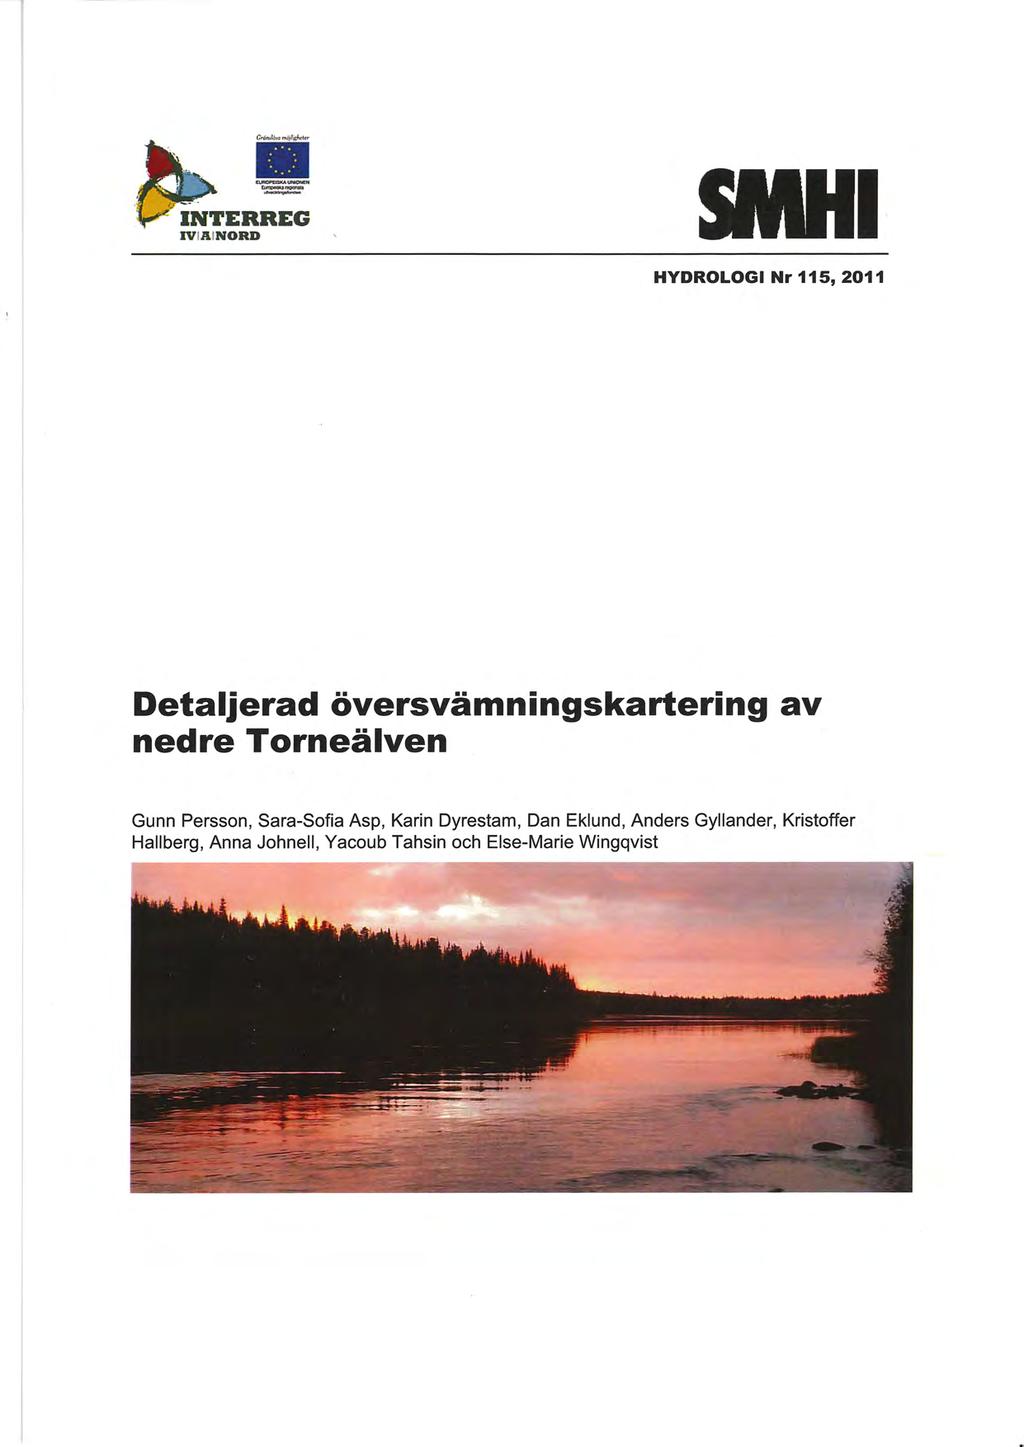 IVIA tnord -- = I HYDROLOGI Nr 115, 2011 Detaljerad översvämningskartering av nedre Torneälven Gunn Persson, Sara-Sofia